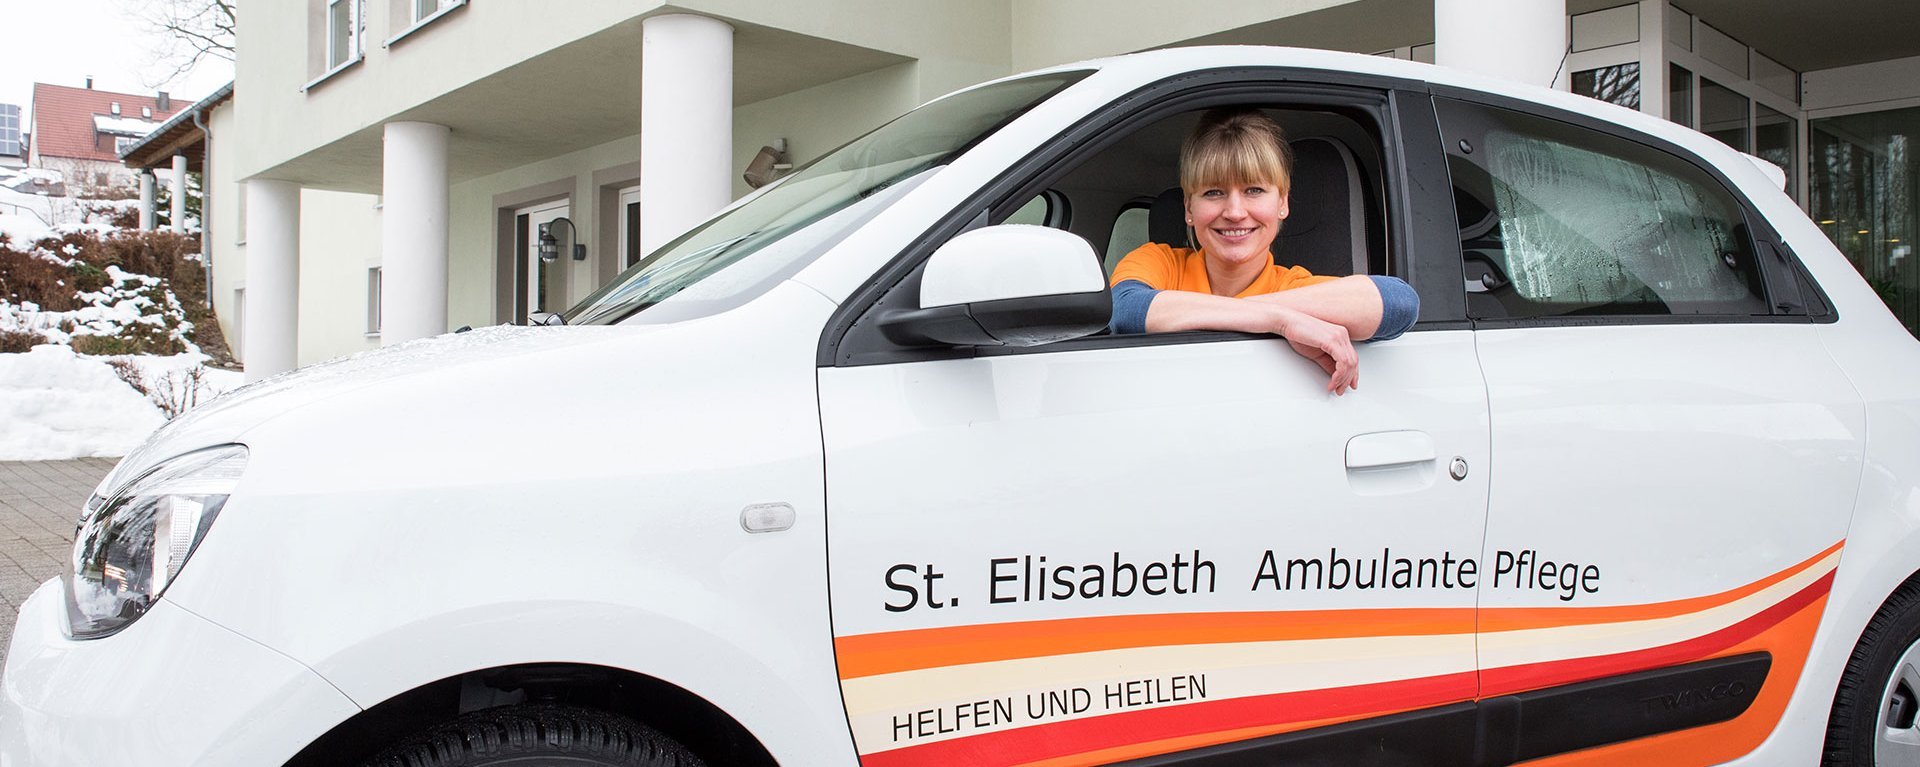 Eine junge Pflegerin in ihrem Auto mit der Aufschrift: "St. Elisabeth Ambulante Pflege - Heilen und Helfen"